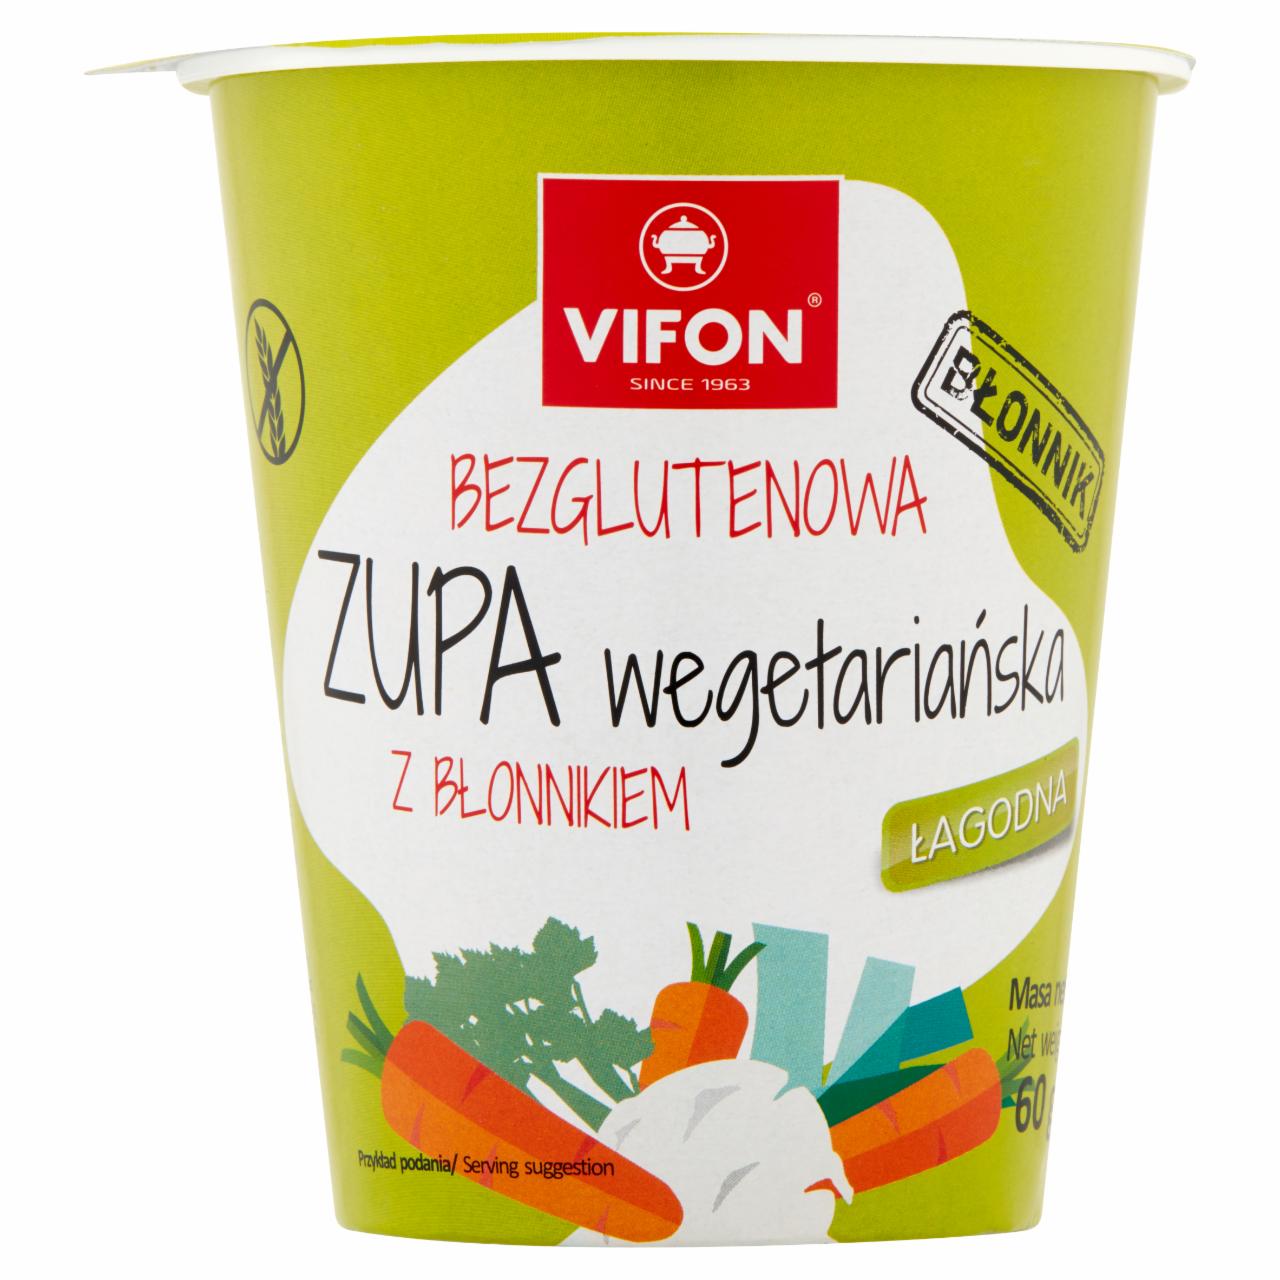 Zdjęcia - Vifon Bezglutenowa zupa wegetariańska z błonnikiem 60 g